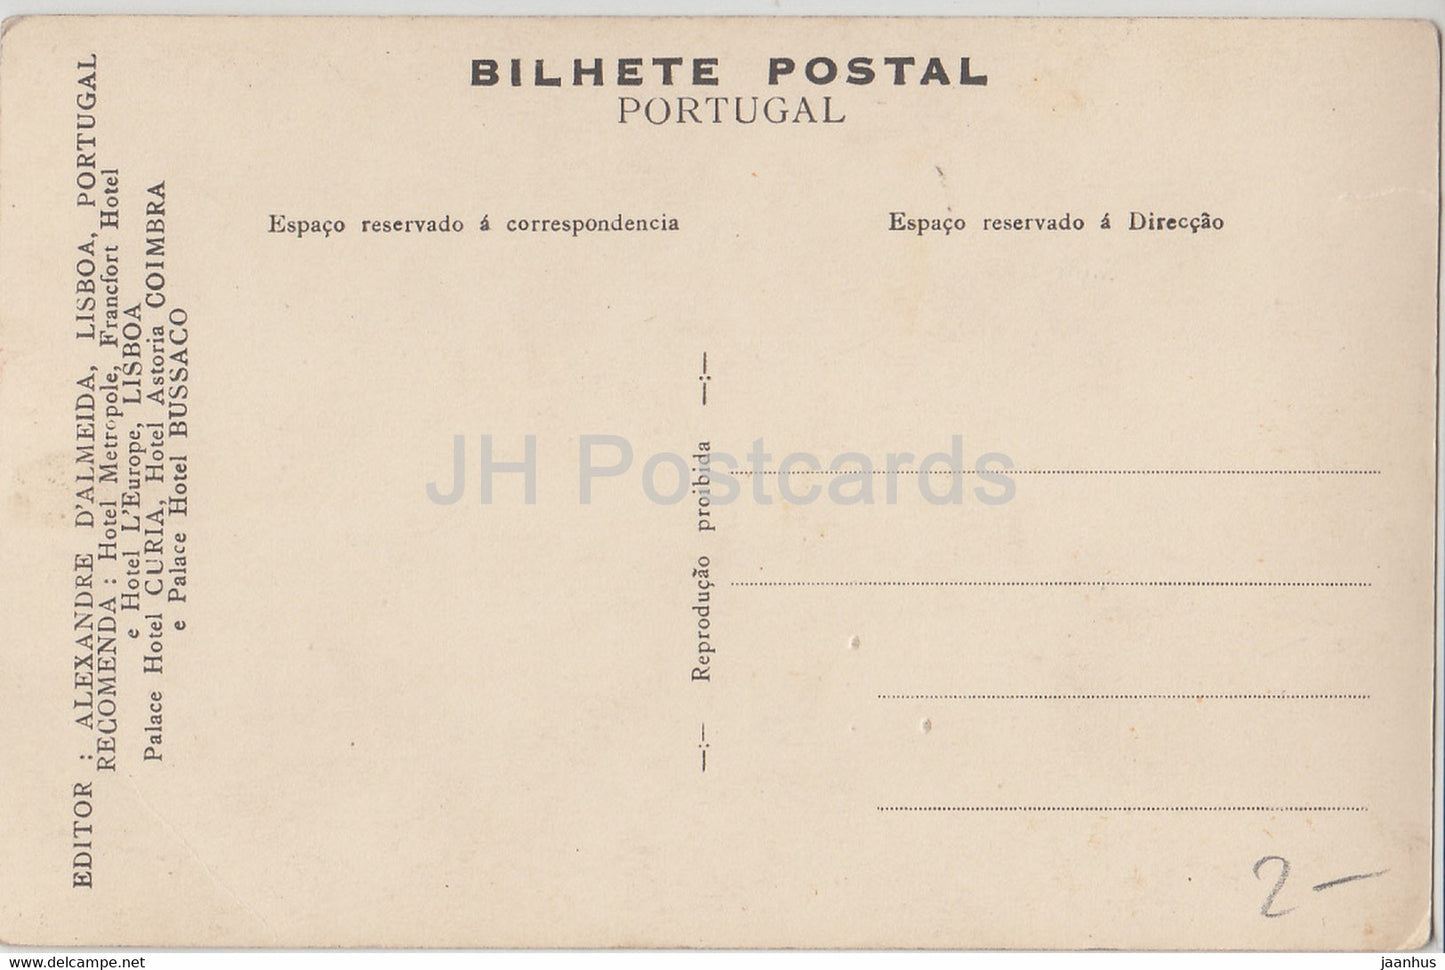 Bussaco - Uma Galeria do Palace Hotel - 32 - carte postale ancienne - Portugal - inutilisée